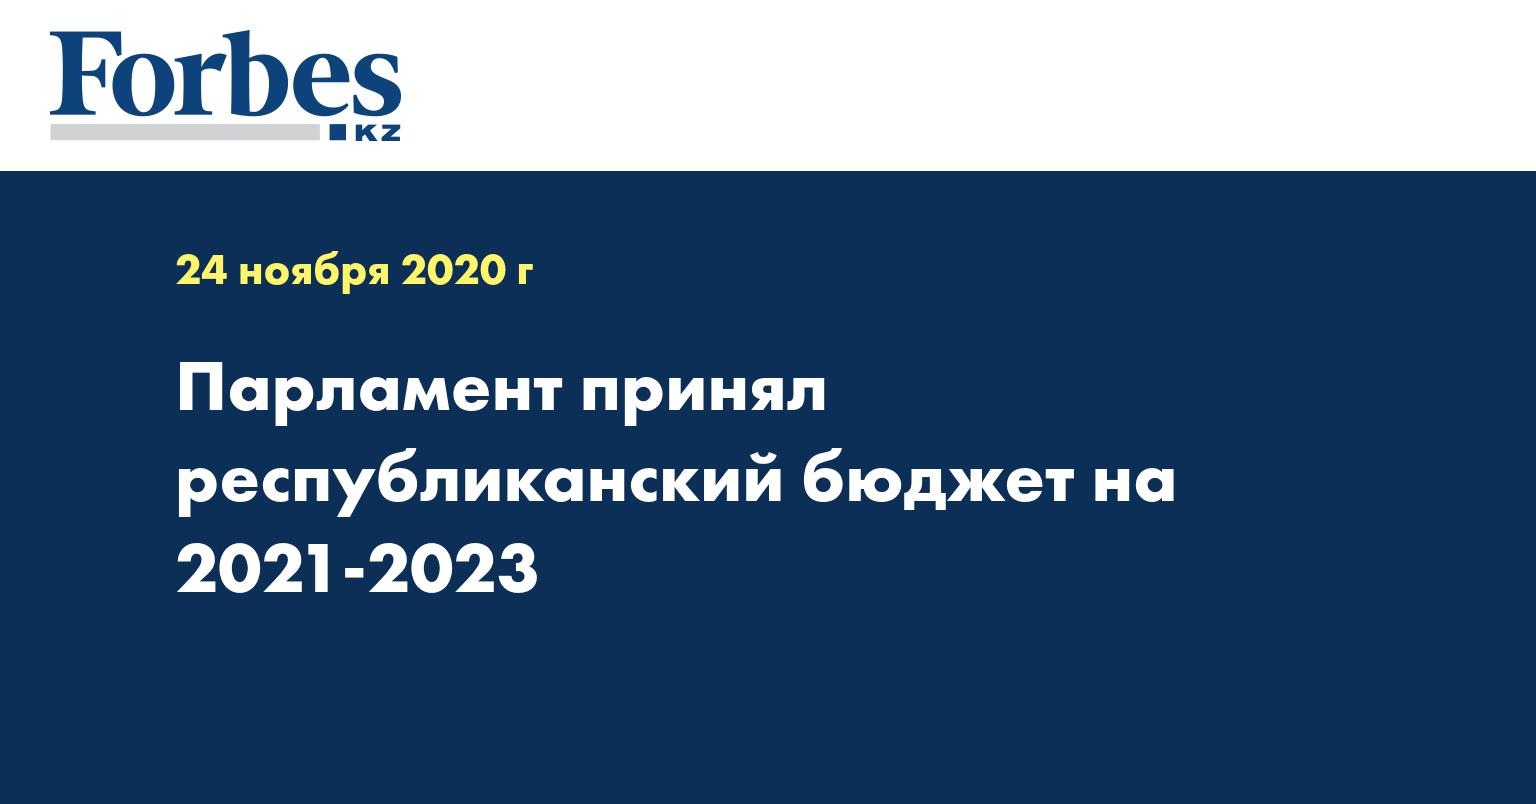 Парламент принял республиканский бюджет на 2021-2023